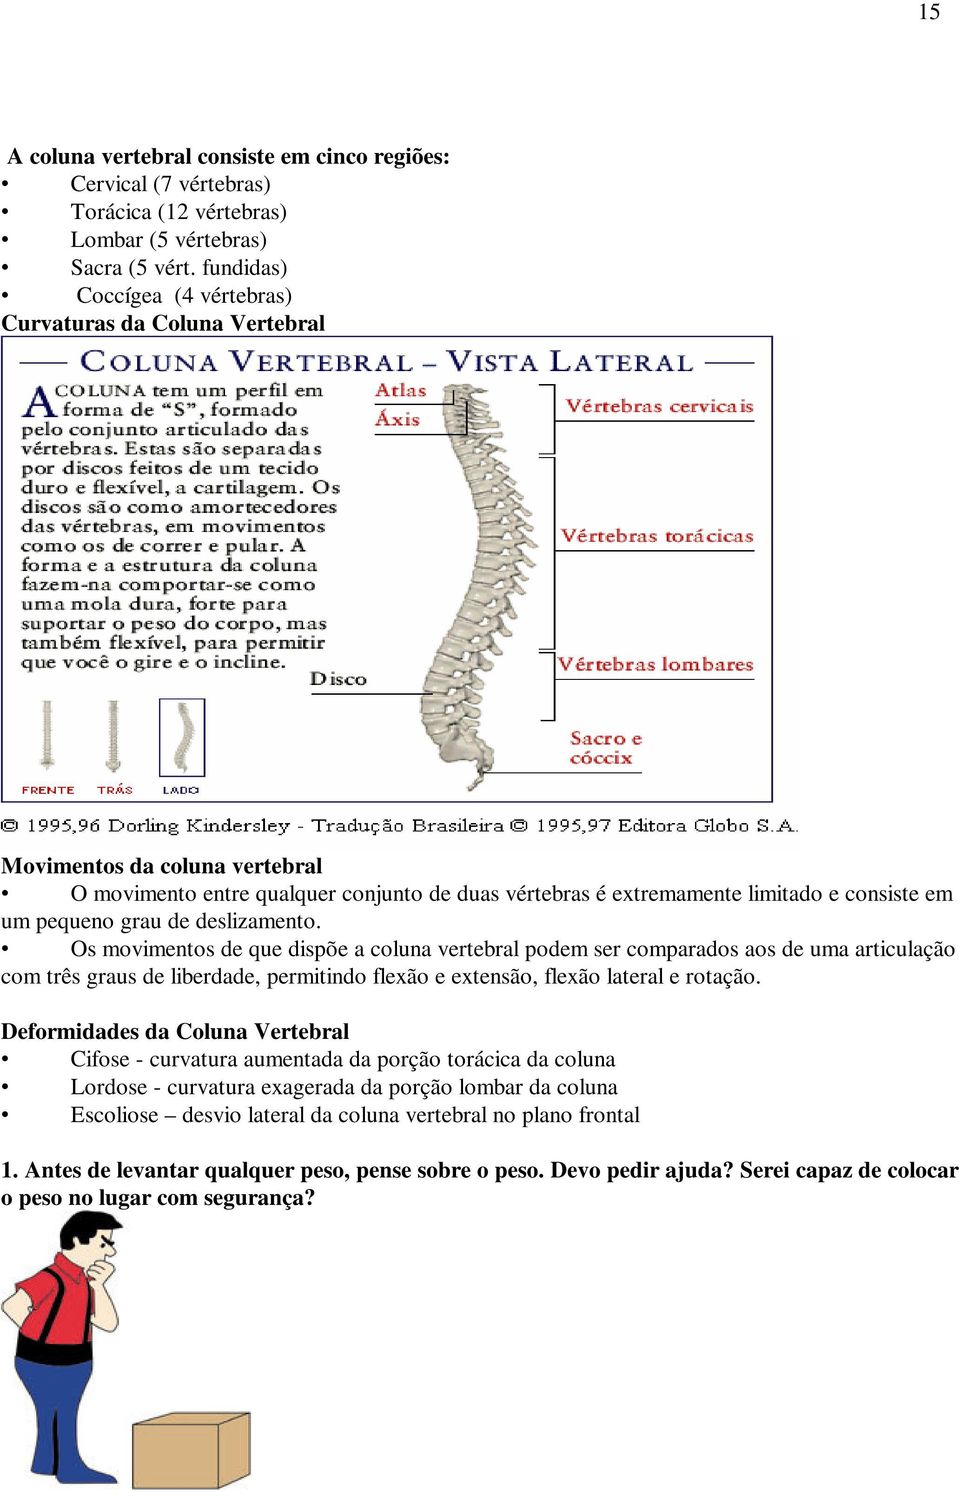 grau de deslizamento. Os movimentos de que dispõe a coluna vertebral podem ser comparados aos de uma articulação com três graus de liberdade, permitindo flexão e extensão, flexão lateral e rotação.